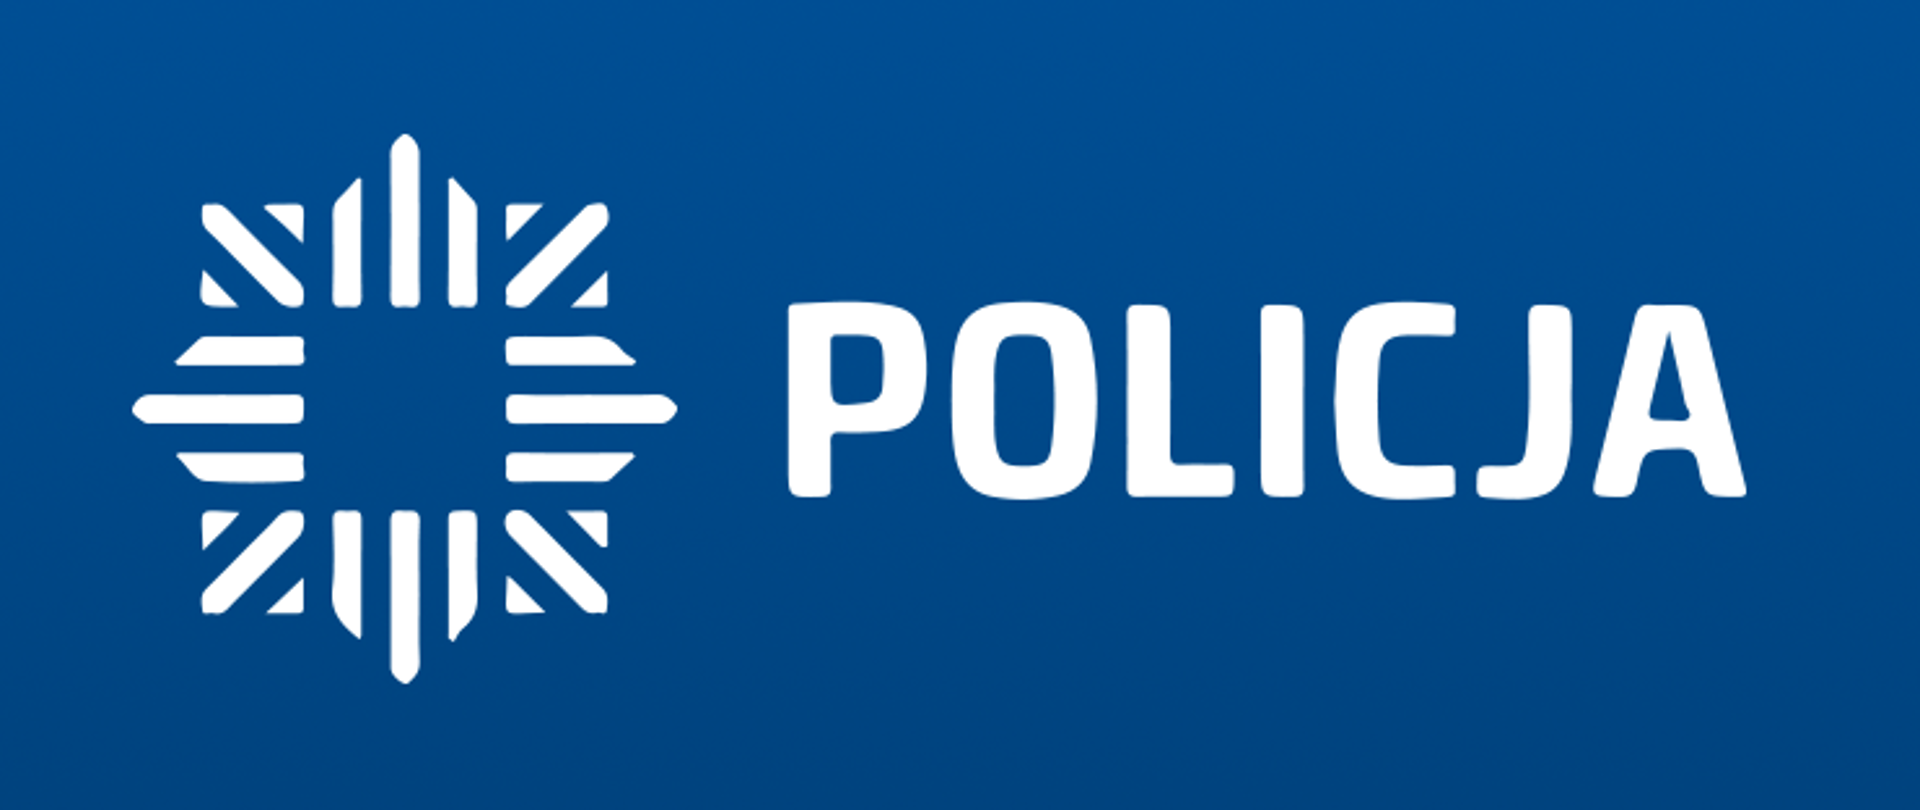 Logo Policji. Na niebieskim tle napis białymi literami POLICJA oraz odznaka